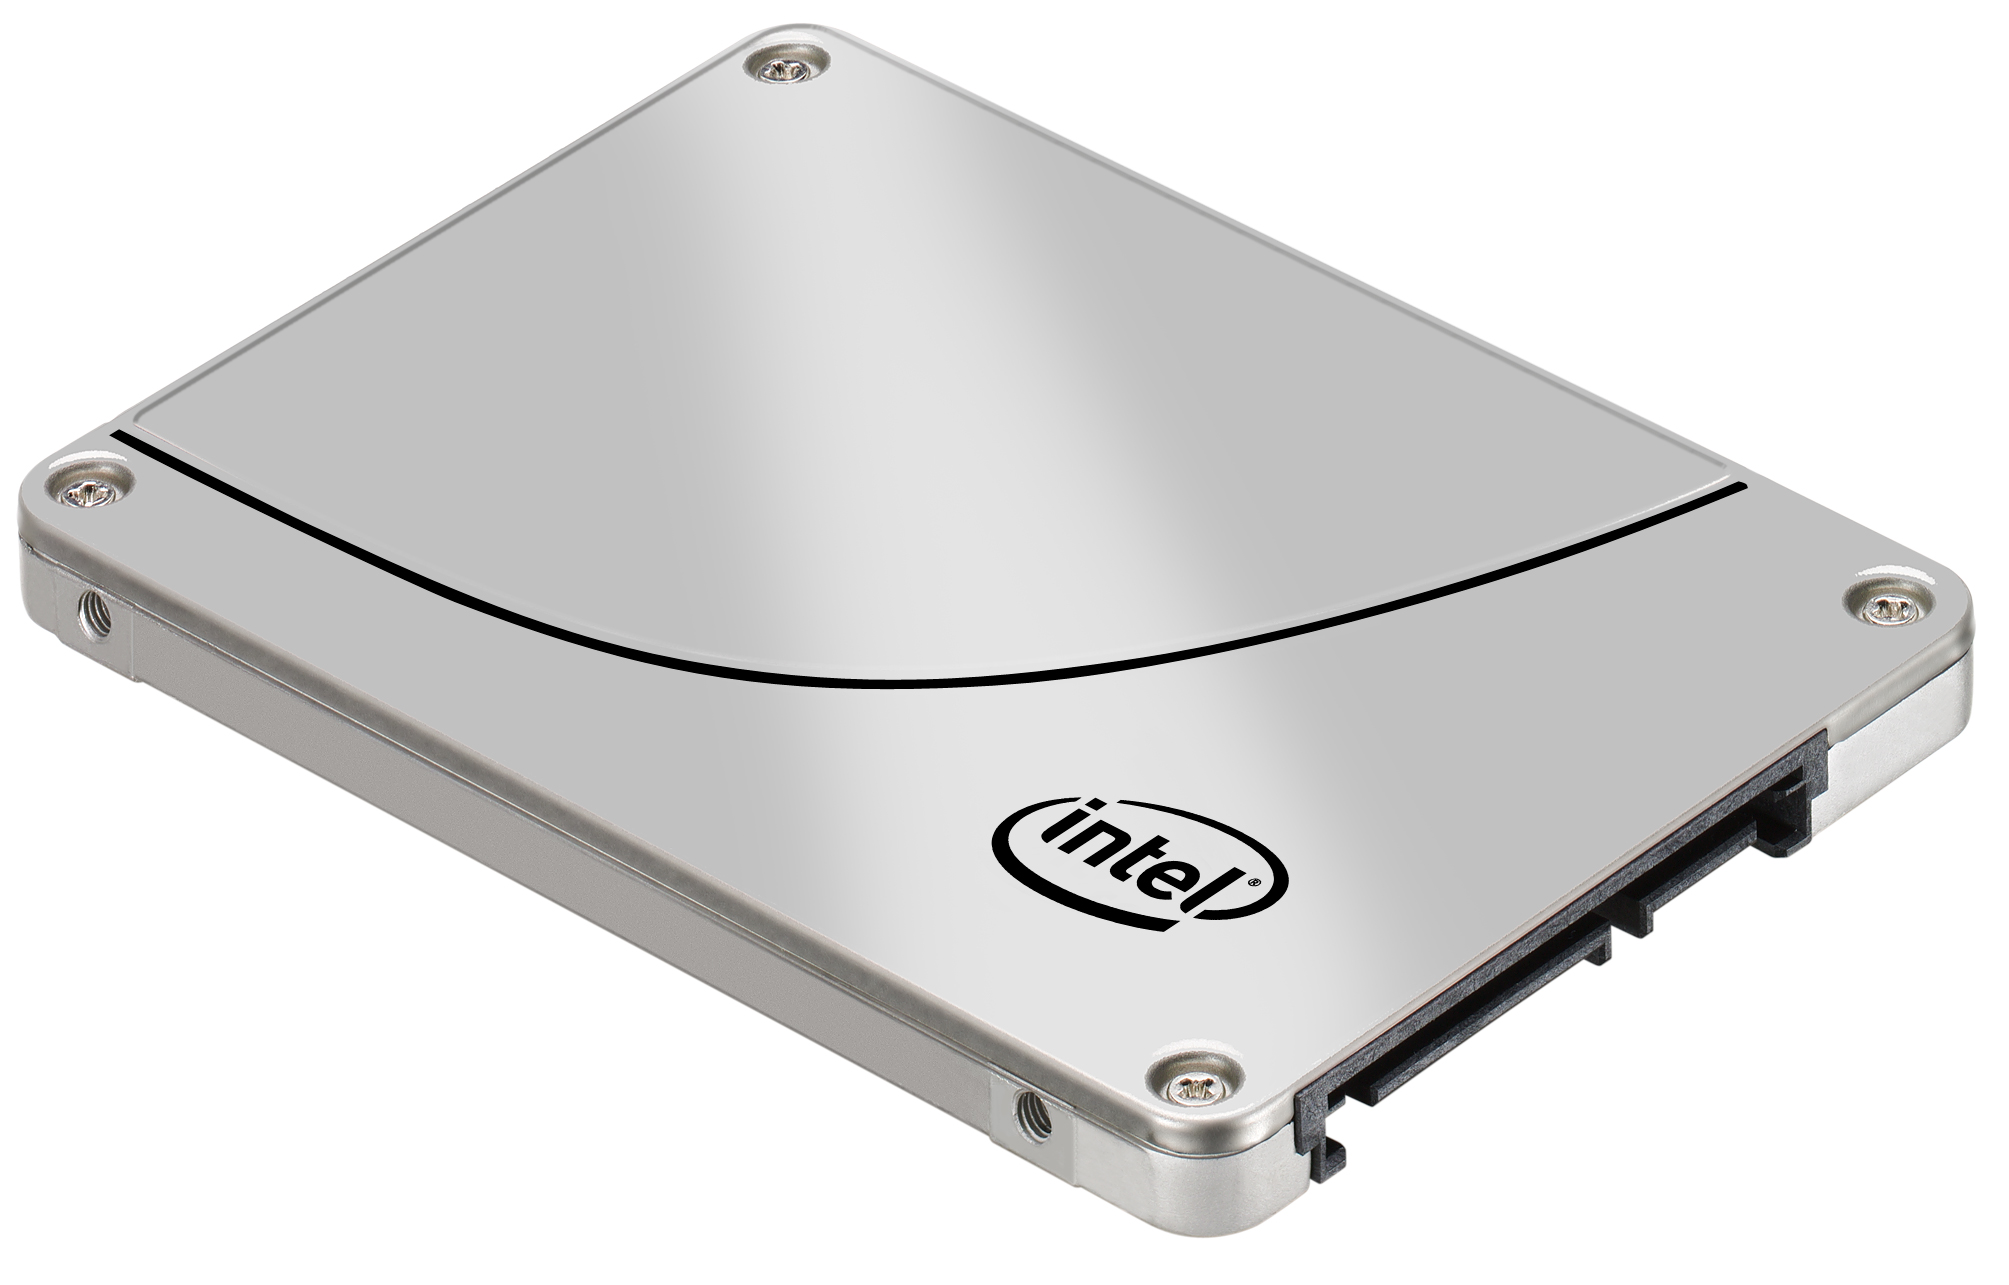 Immagine pubblicata in relazione al seguente contenuto: Intel introduce gli SSD DC S3500 dedicati all'ambito data center | Nome immagine: news19697_Intel-SSD-DC-S3500_1.jpg